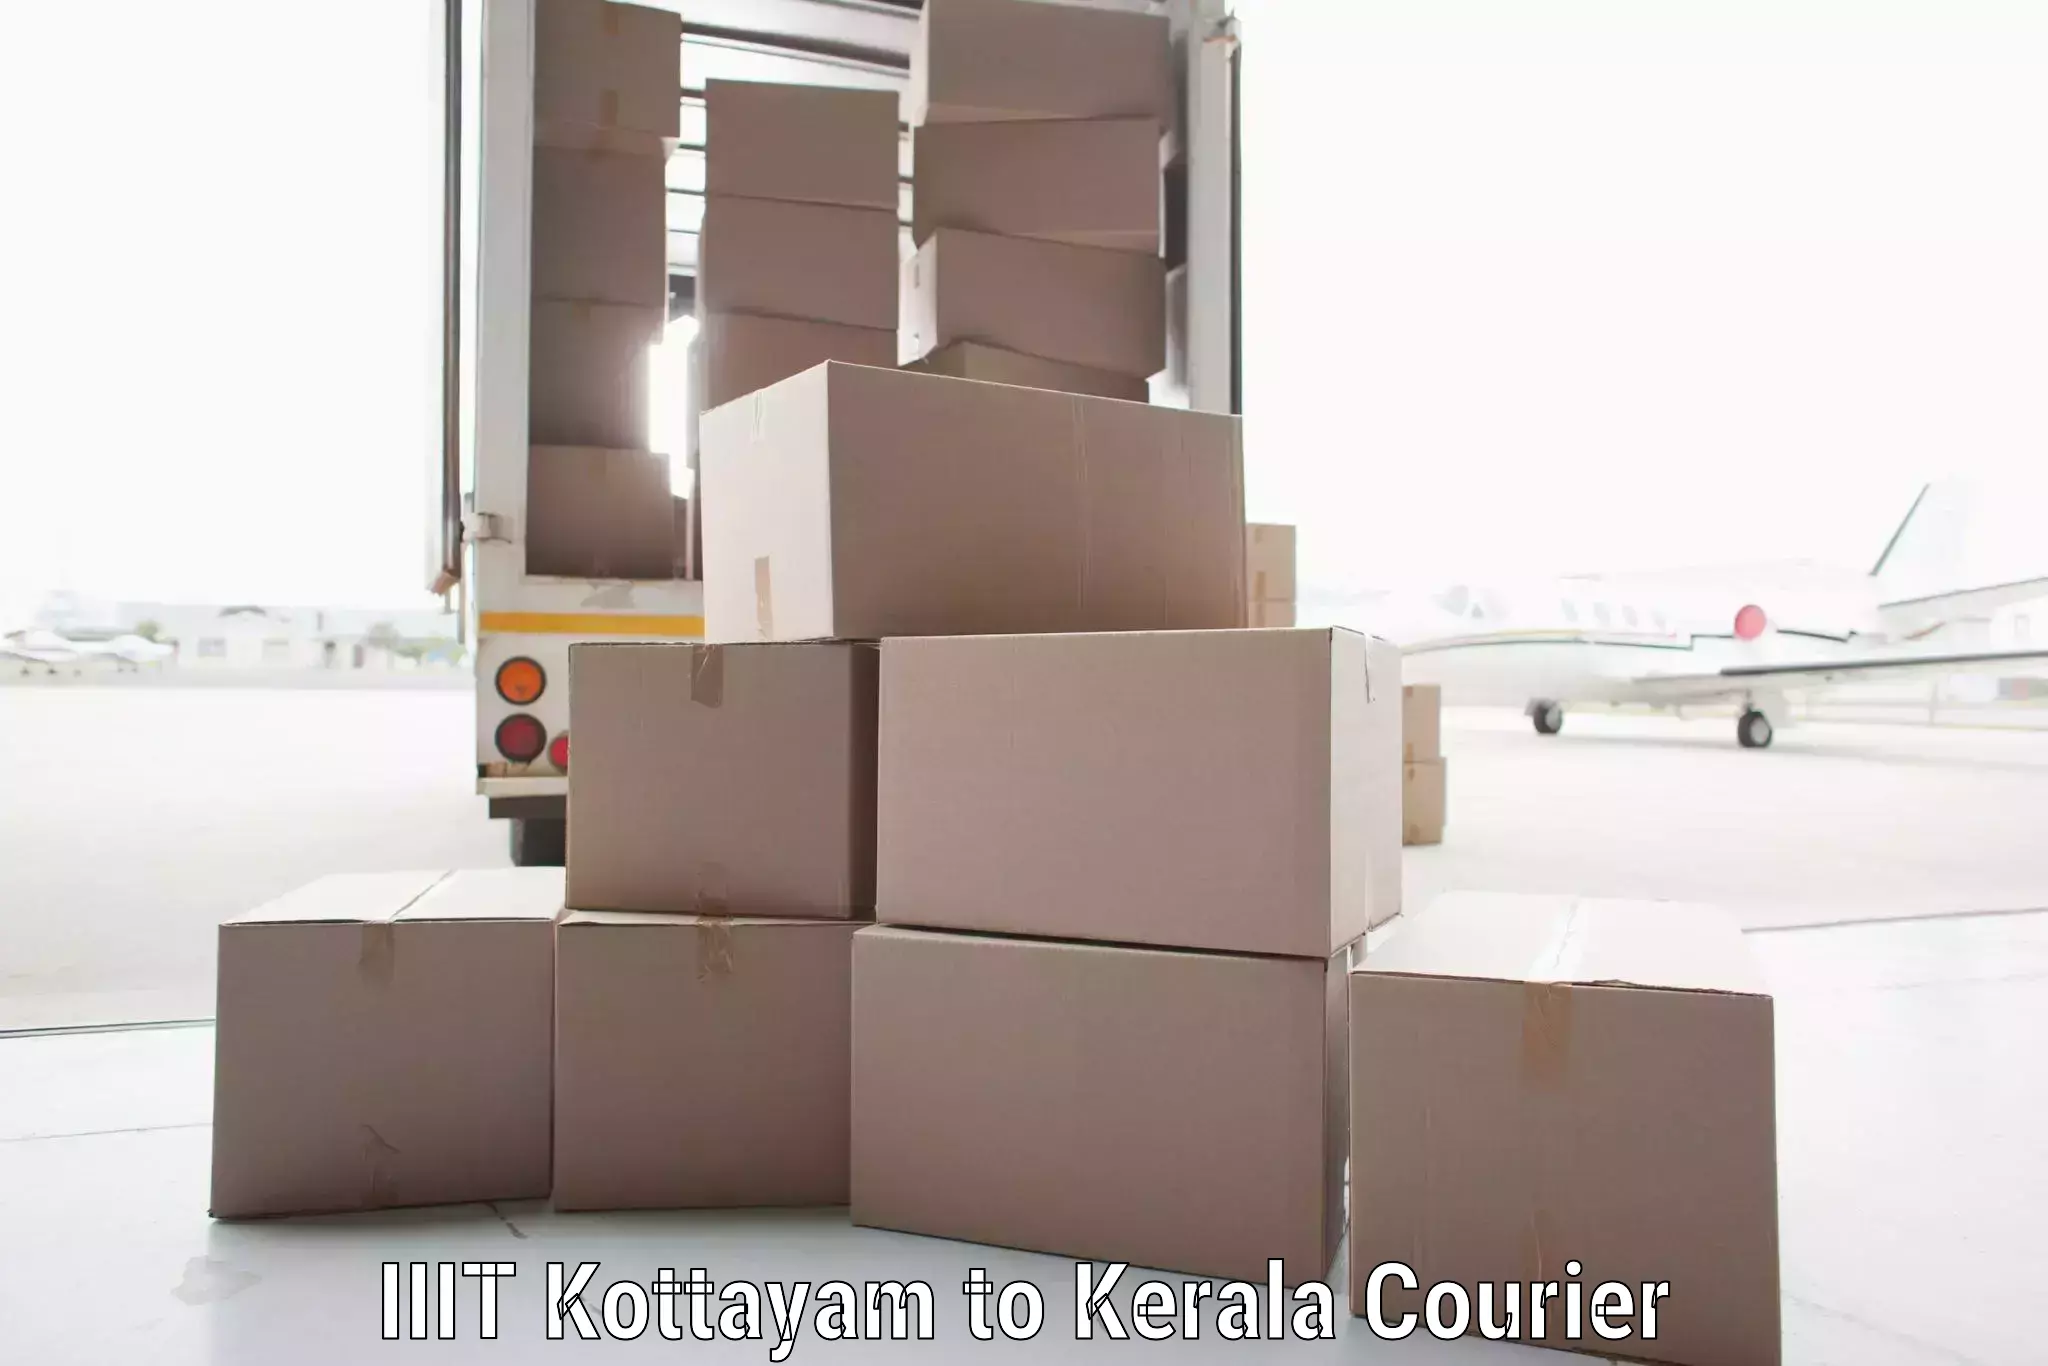 Online shipping calculator IIIT Kottayam to Kerala